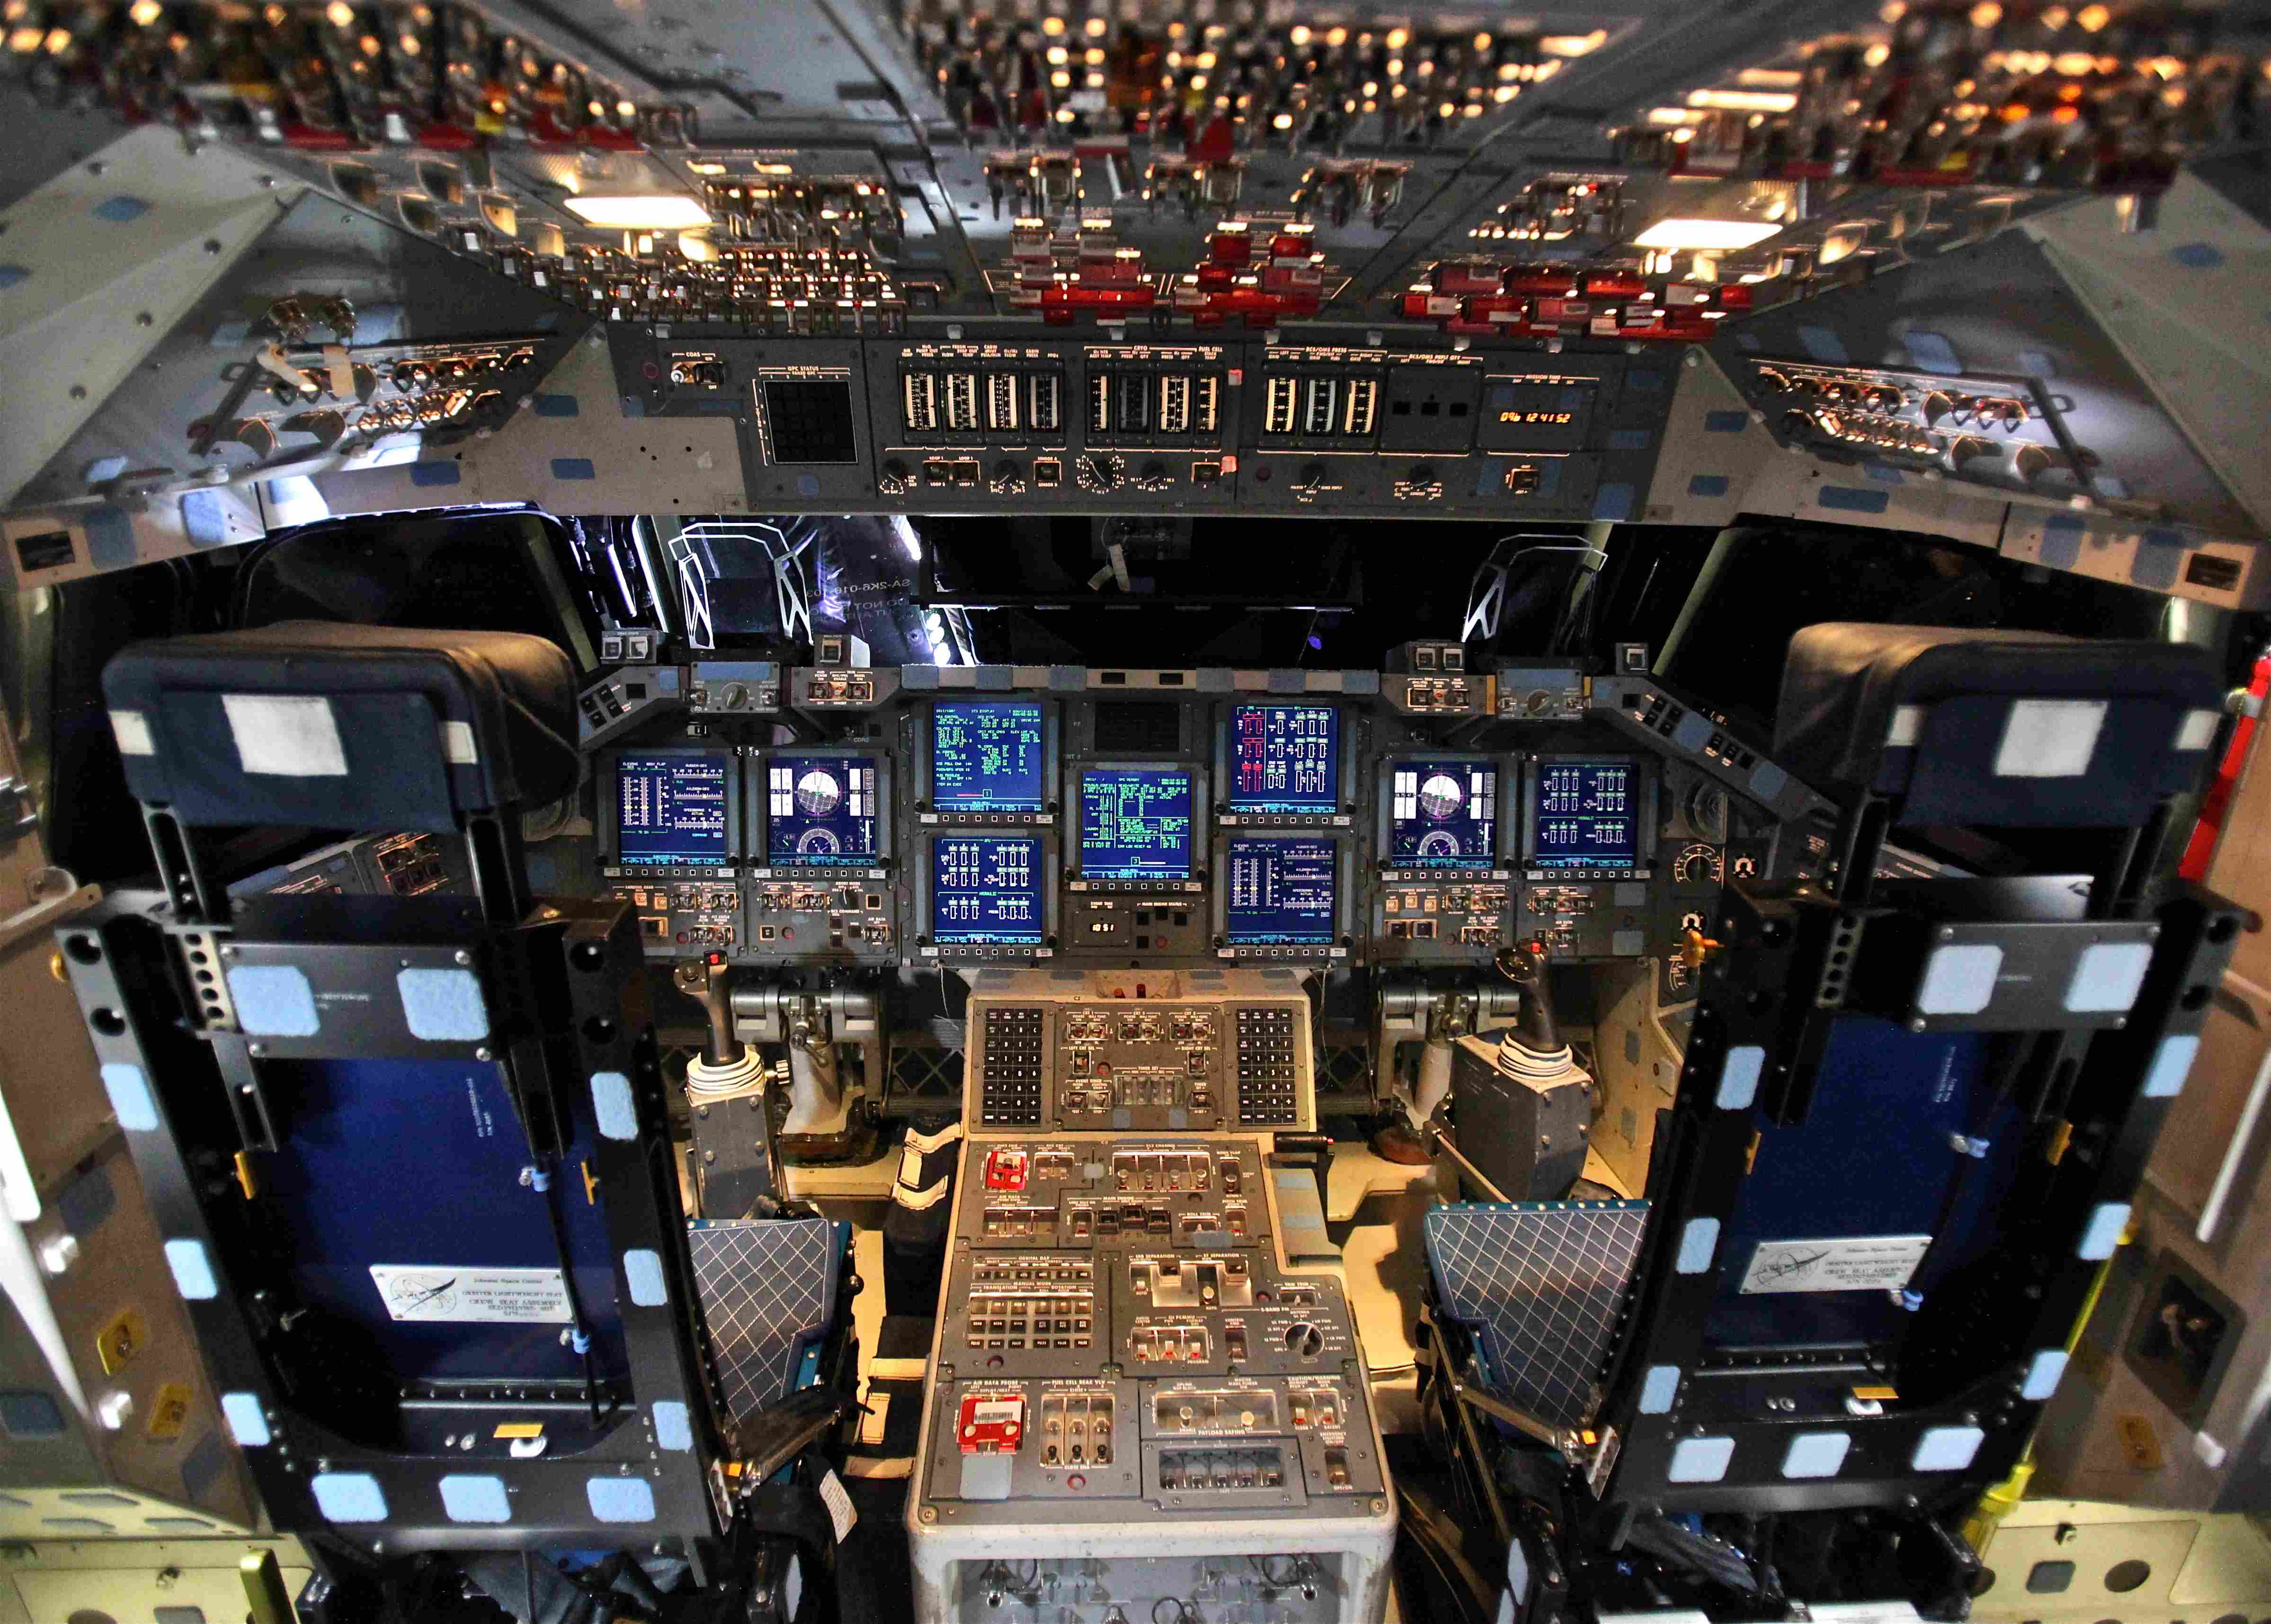 Images Wikimedia Commons/16 Steve Jurvetson Space_Shuttle_Endeavour's_Control_Panels.jpg